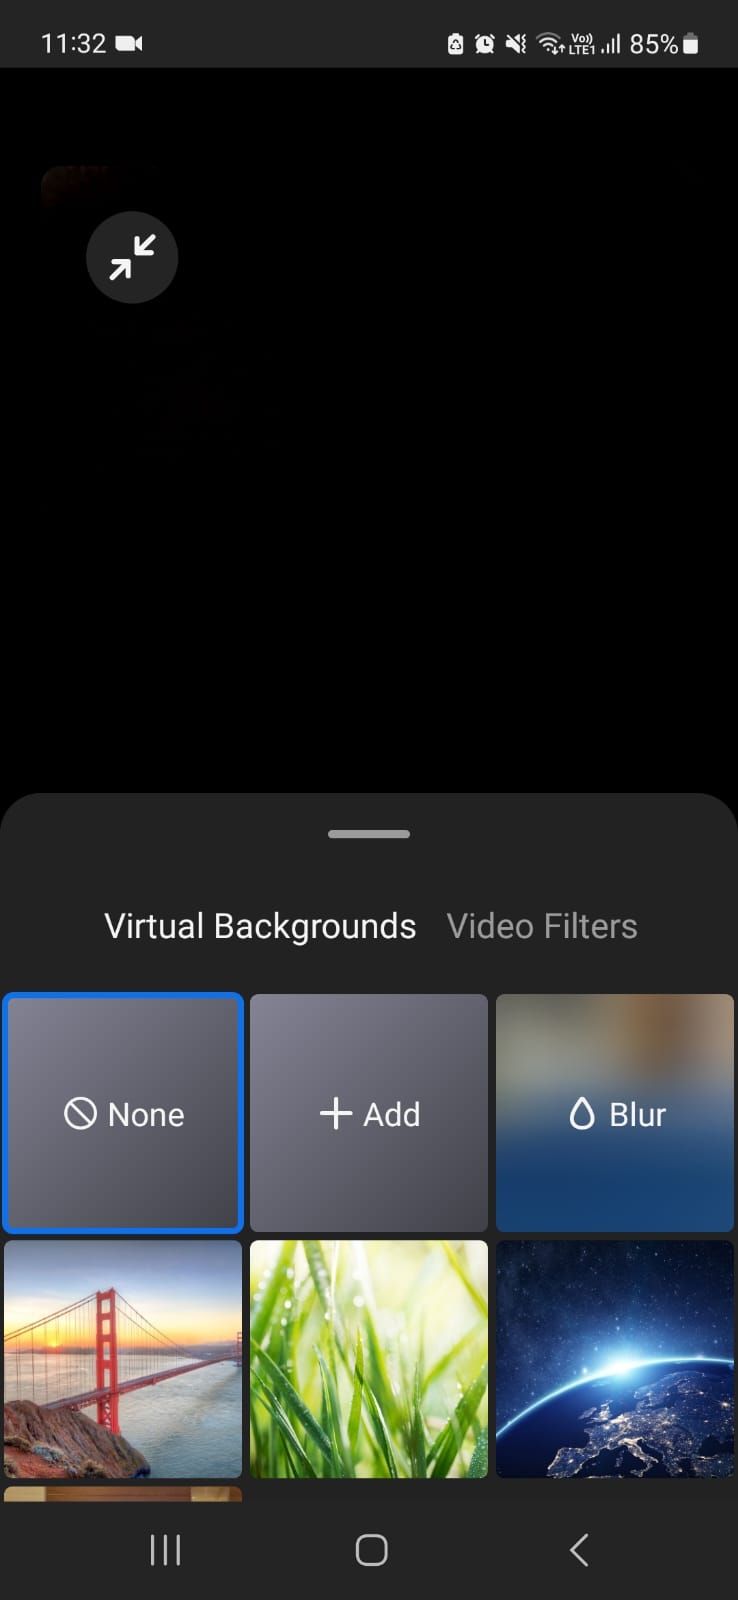 Captura de tela mostrando planos de fundo virtuais no aplicativo móvel Zoom